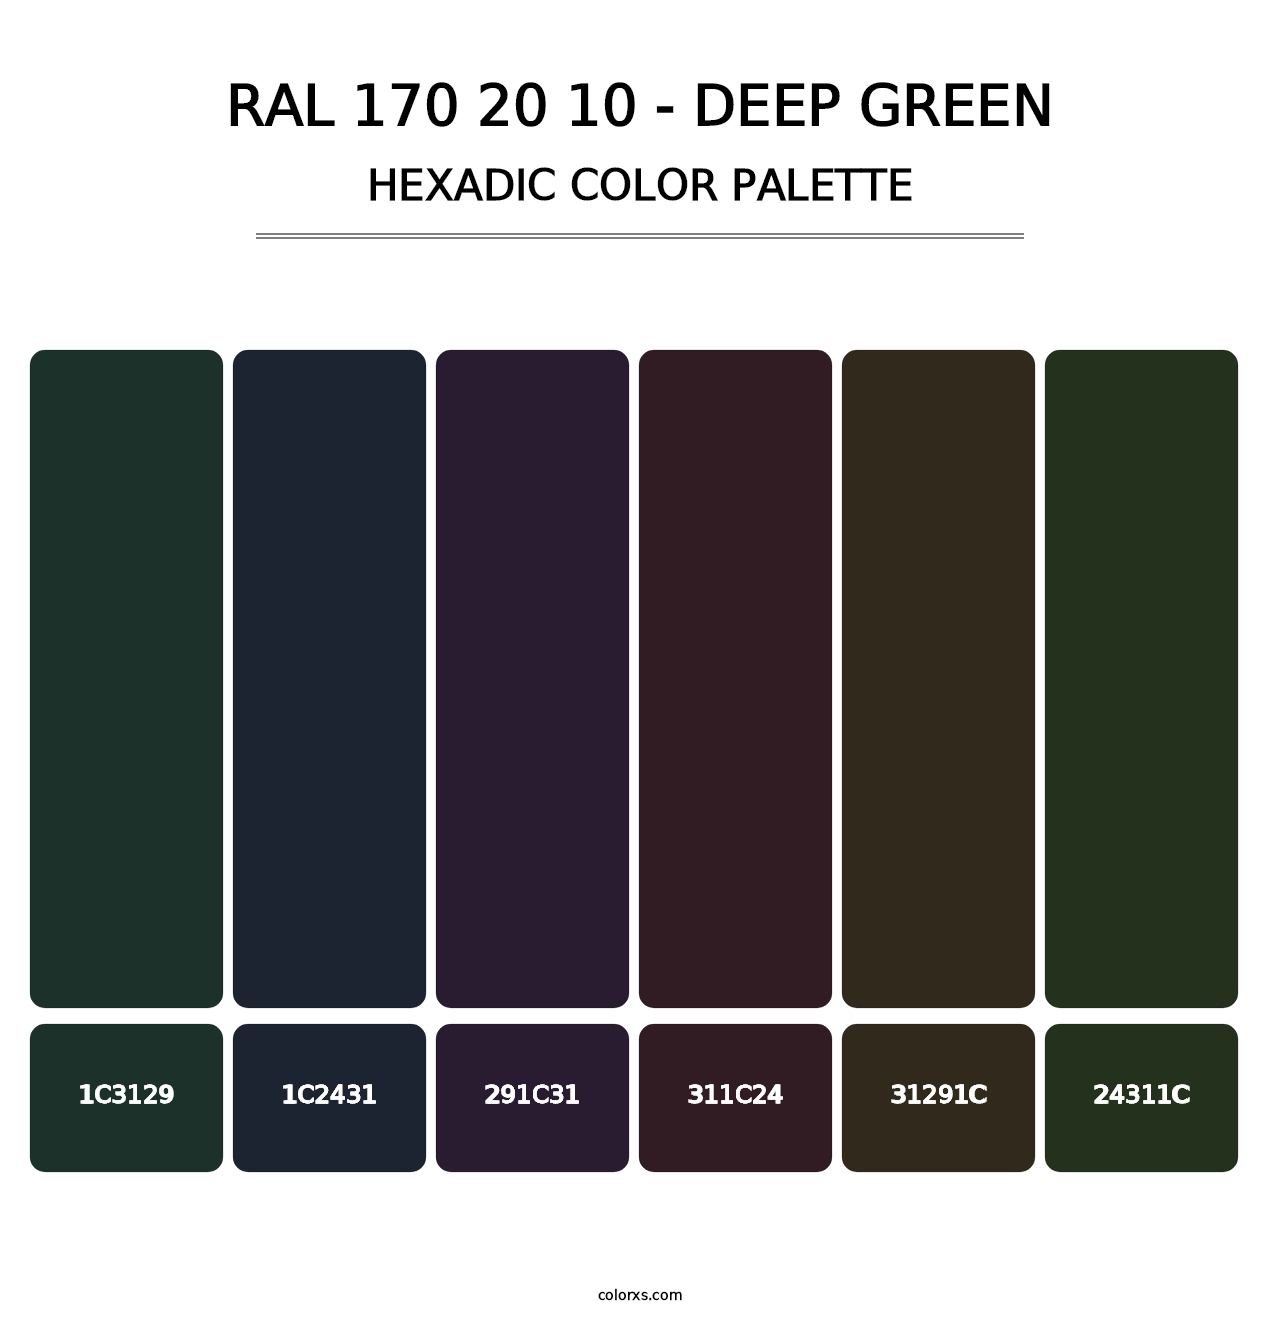 RAL 170 20 10 - Deep Green - Hexadic Color Palette